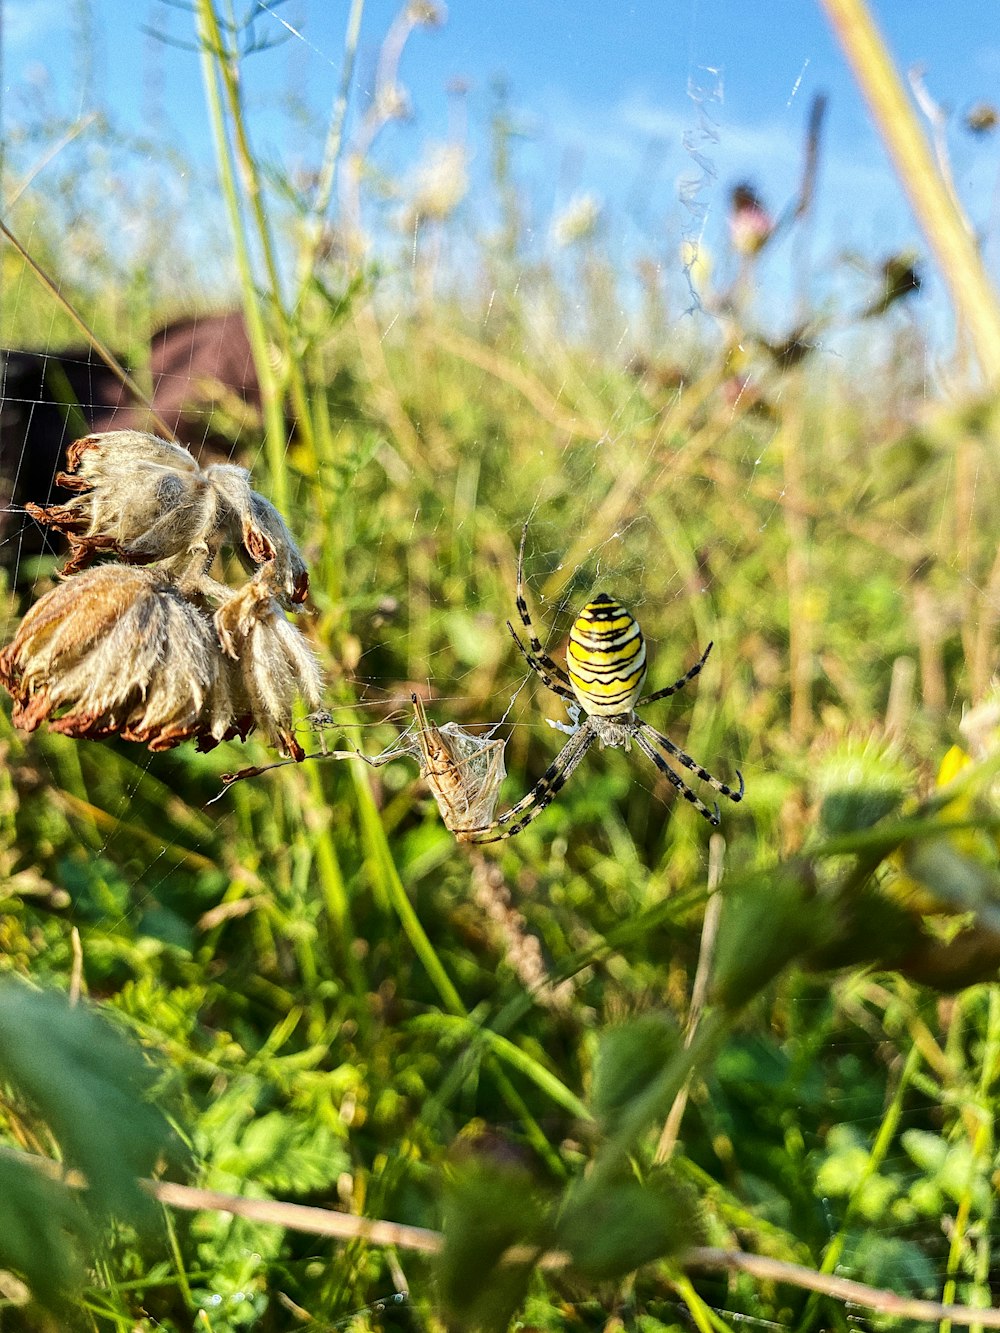 araña tigre amarilla y negra en planta verde durante el día